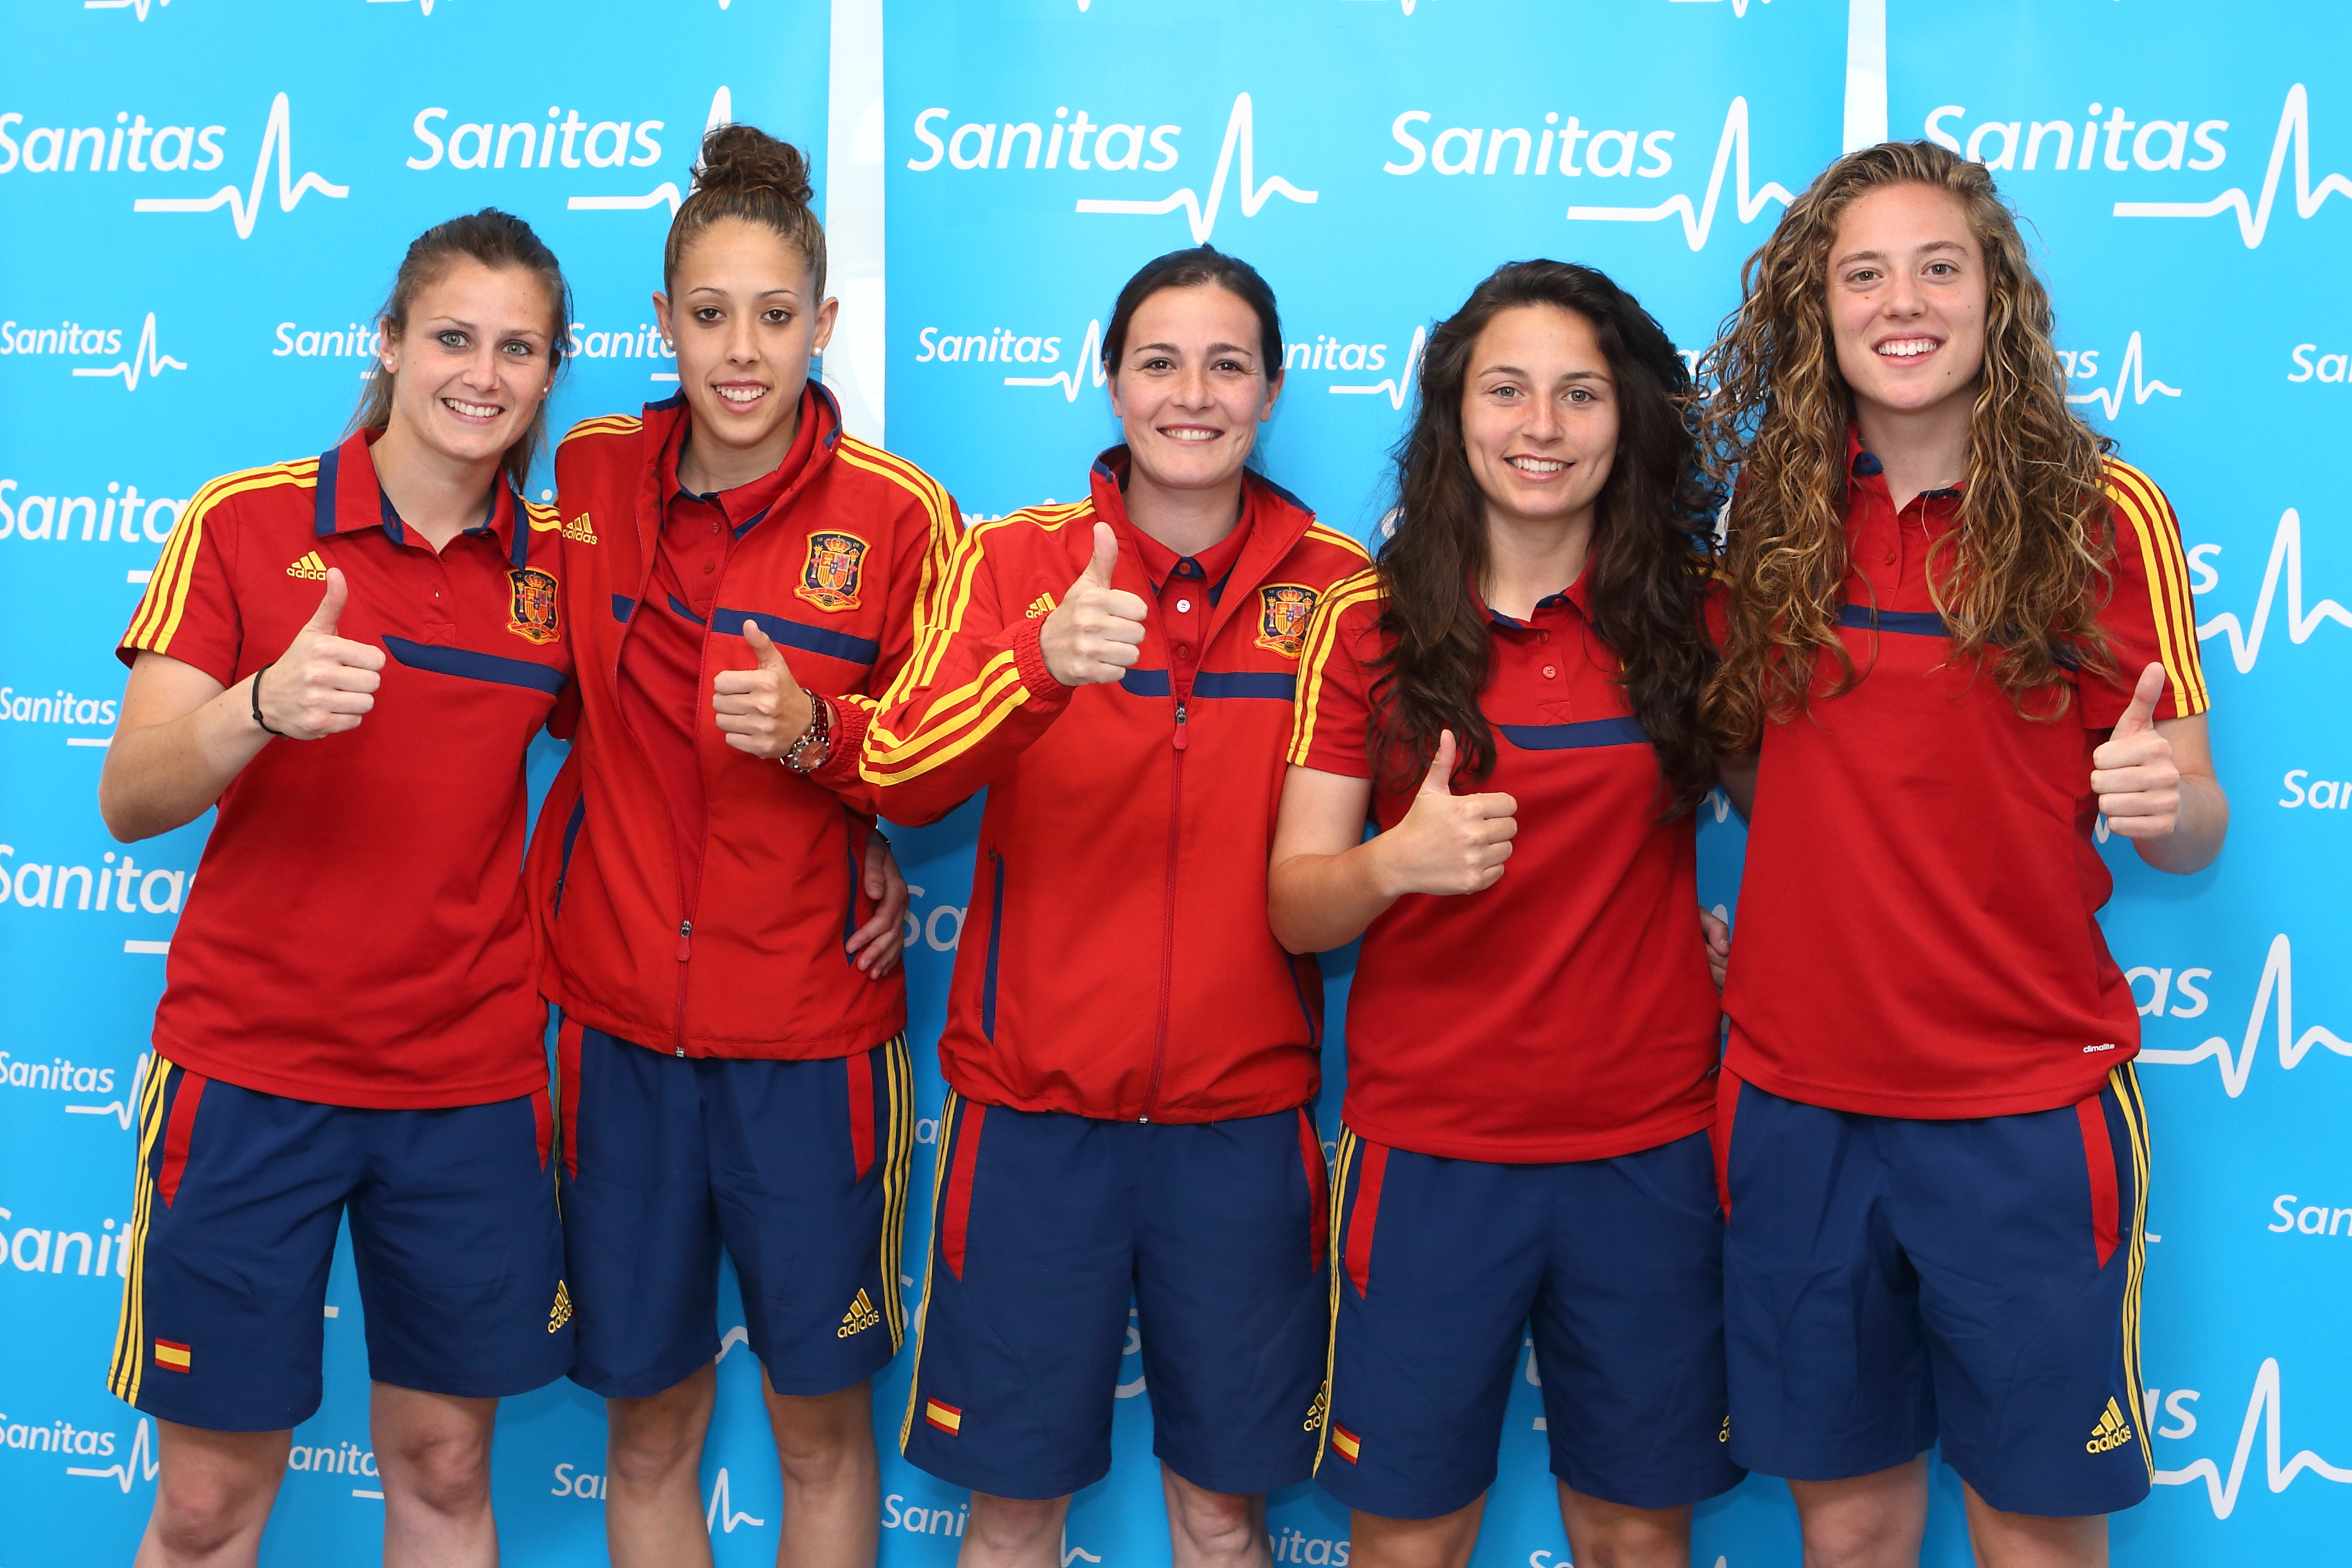 La Selección de Fútbol Femenino visita la Unidad de Medicina Deportiva del Hospital Sanitas La Moraleja - Sanitas